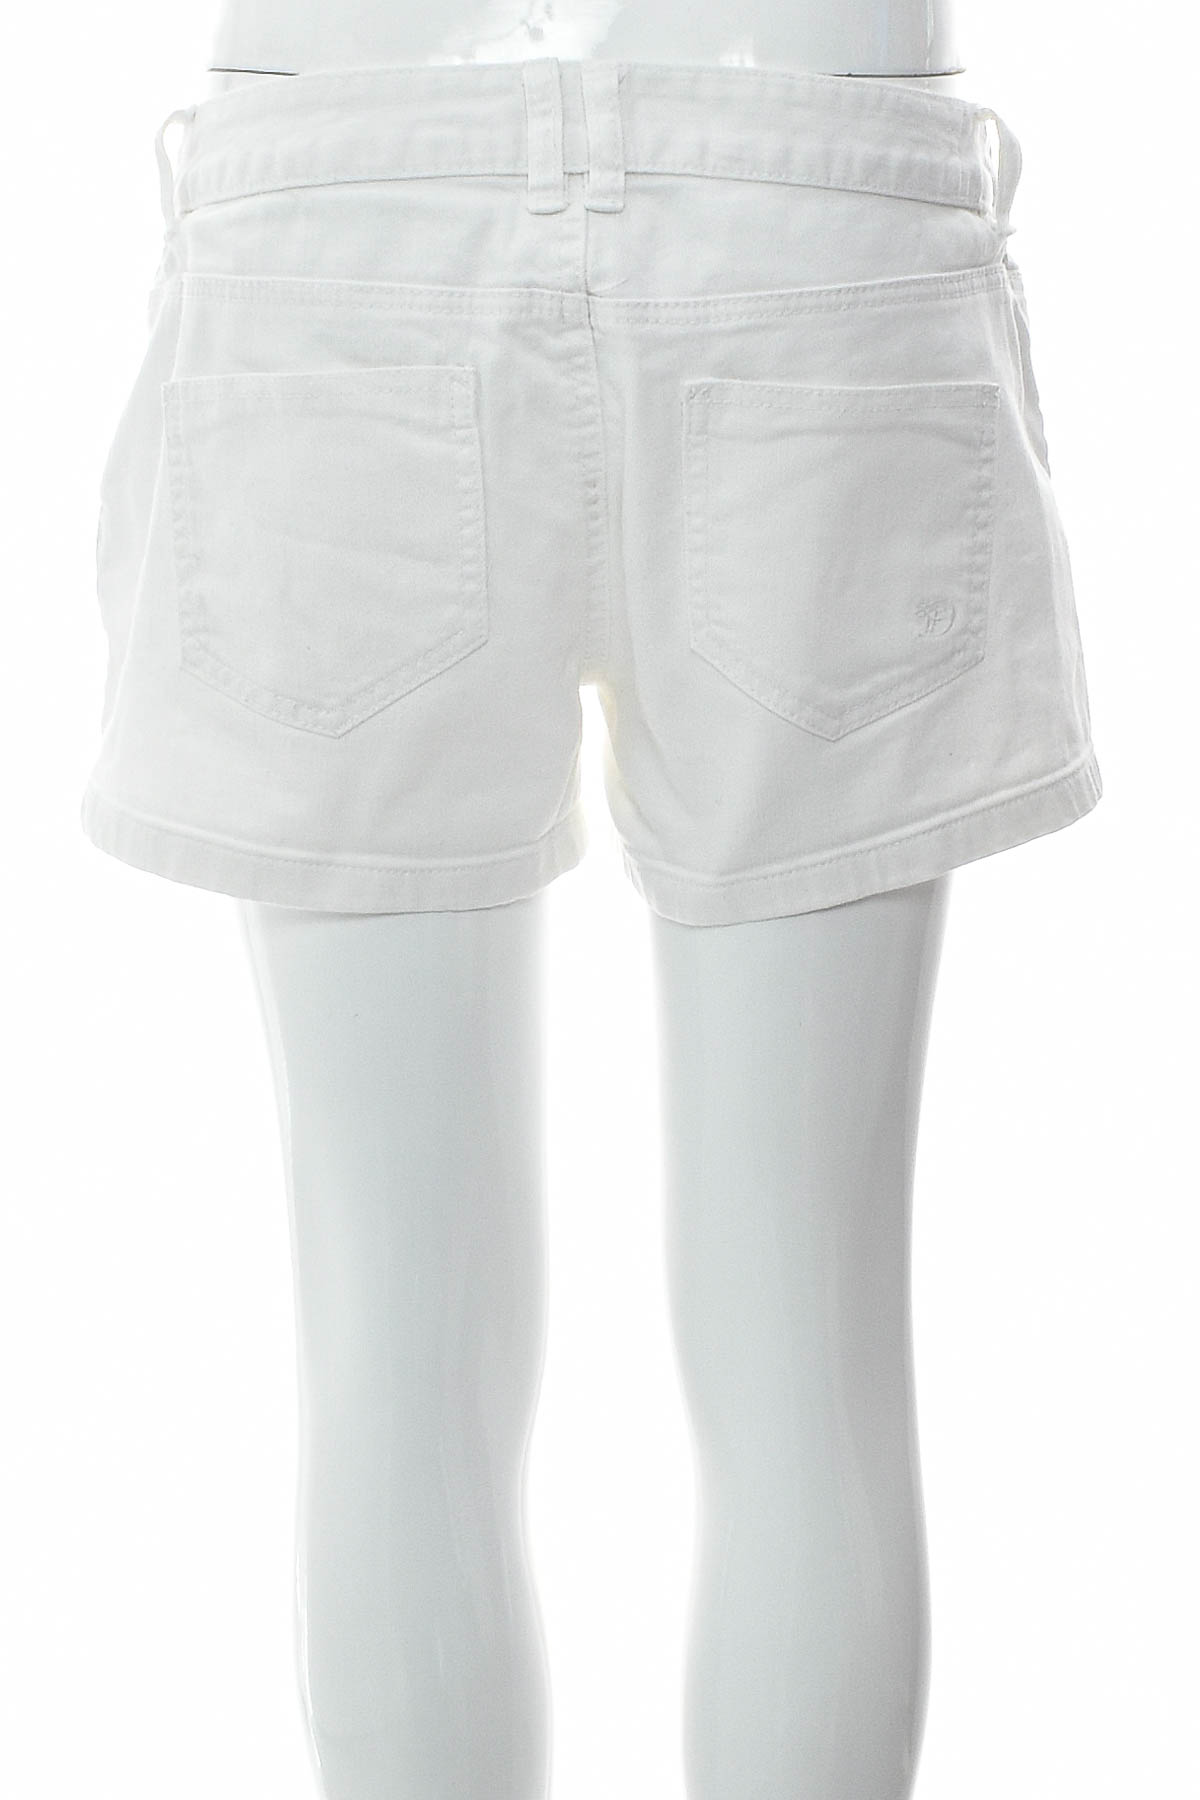 Female shorts - TOM TAILOR Denim - 1